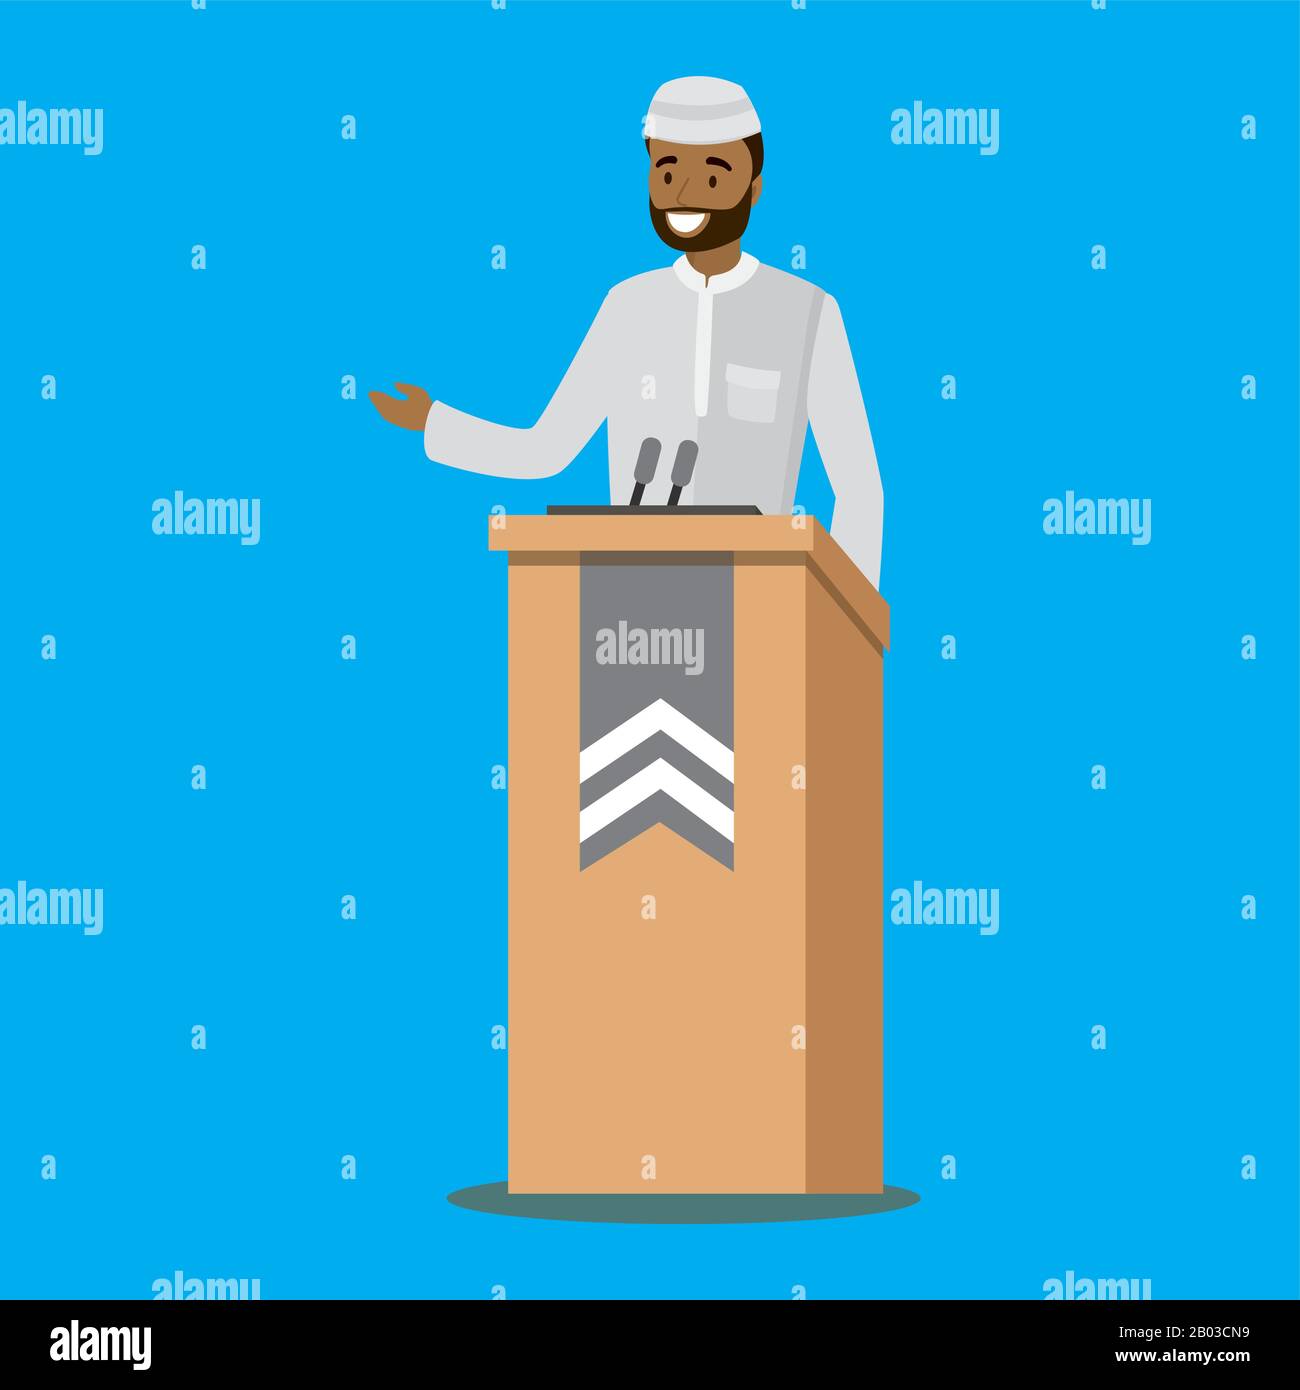 Muslimischer Politiker spricht.arabischer Mann hält Rede von Tribüne mit Mikrofonen. Vektor-Cartoon-Illustration isoliert auf blauem Hintergrund. Stock Vektor